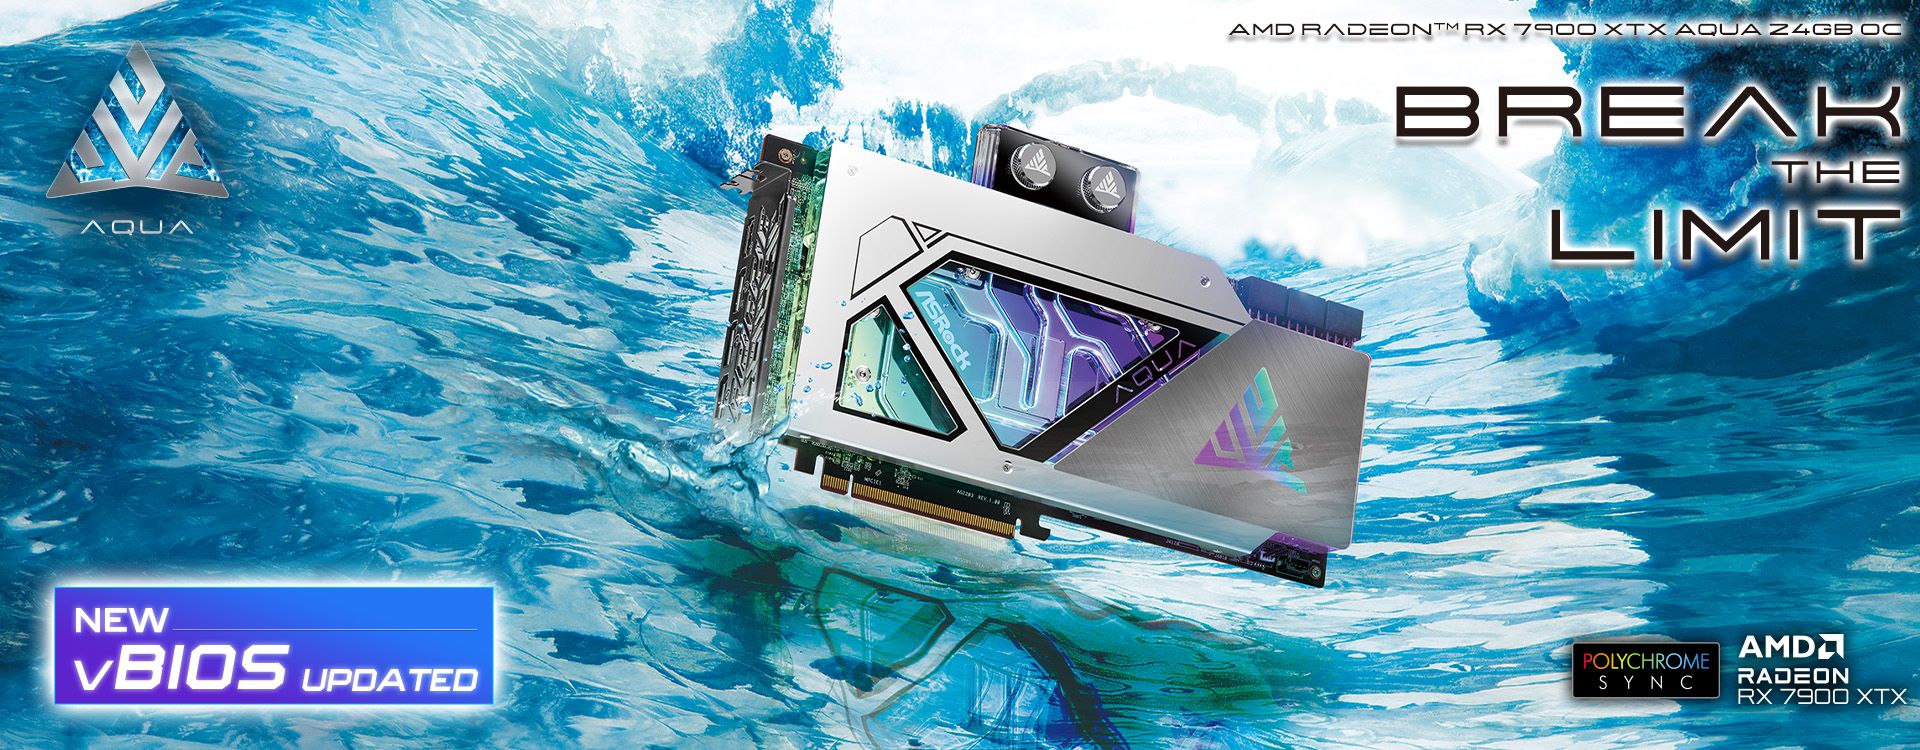 AMD Radeon RX 7900 XTX AQUA vBIOS Update